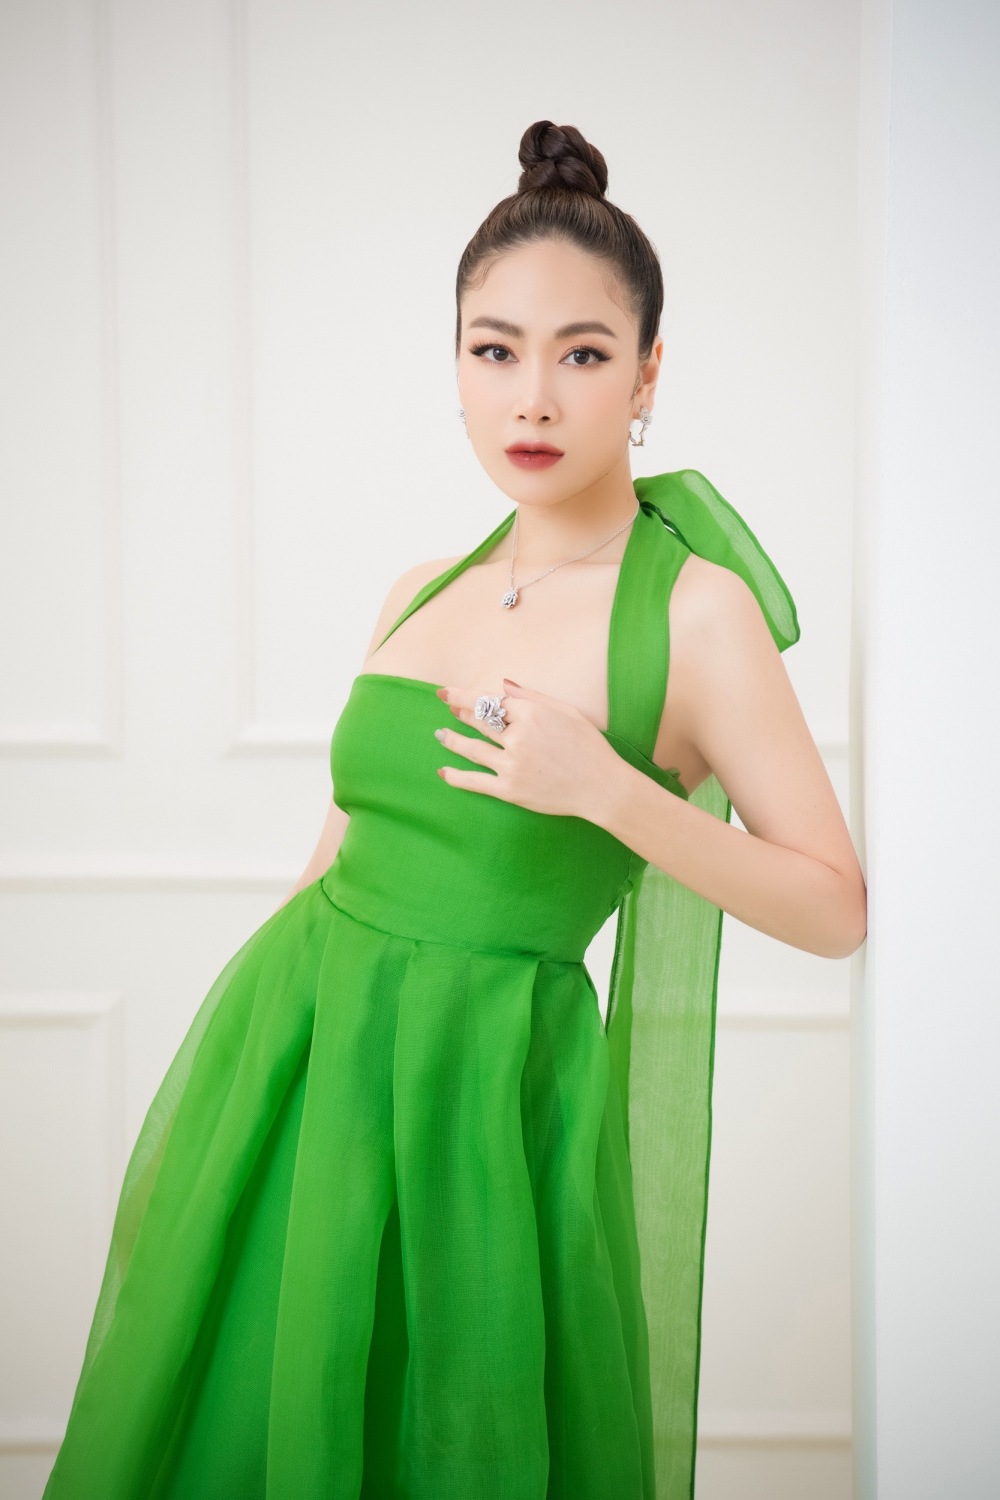 Hoa hậu Tuyết Nga “dát” cây hàng hiệu trị giá hàng tỷ đồng lên người - 1